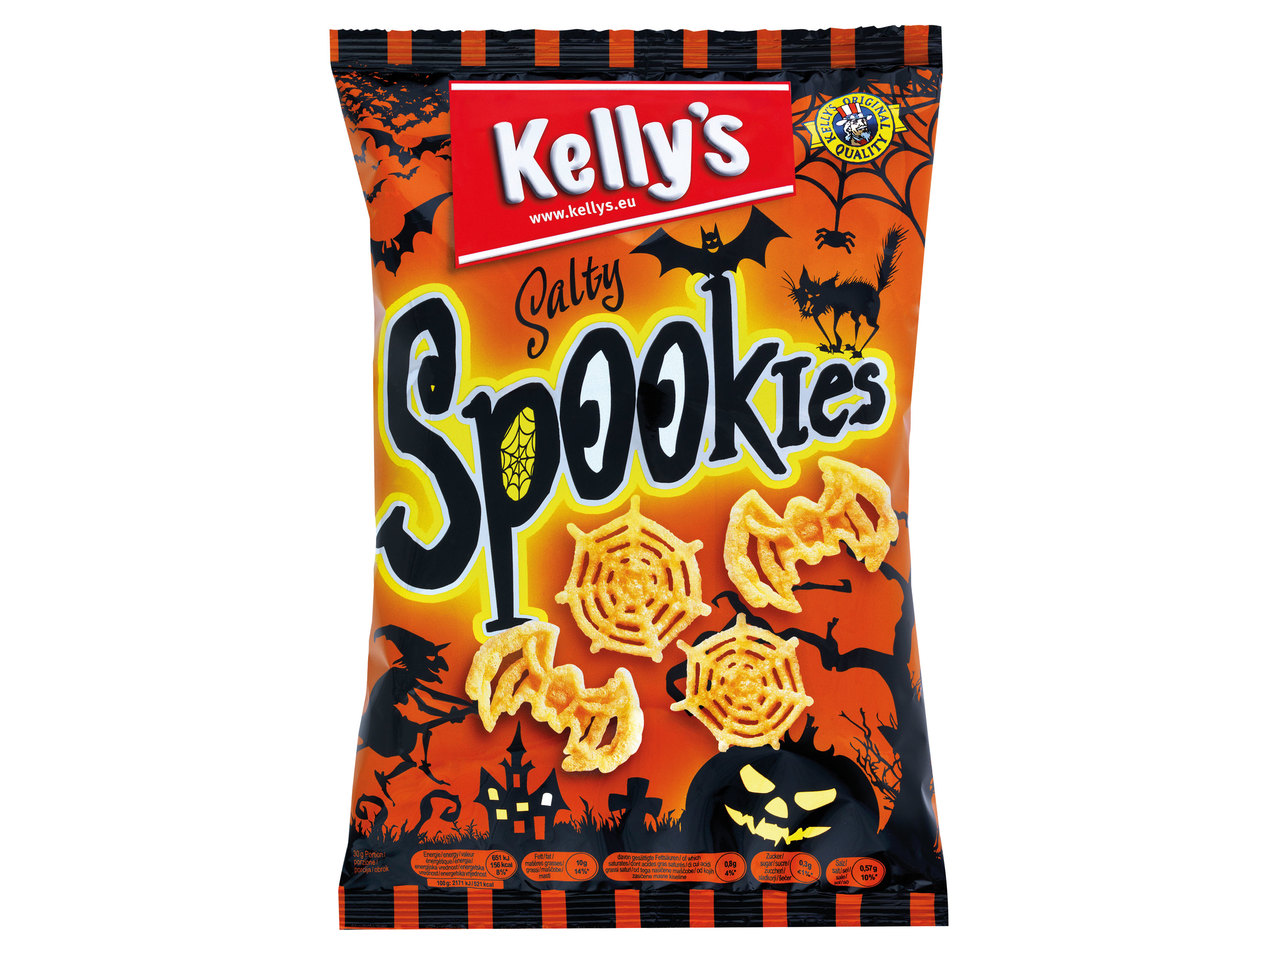 KELLY‘S Spookies